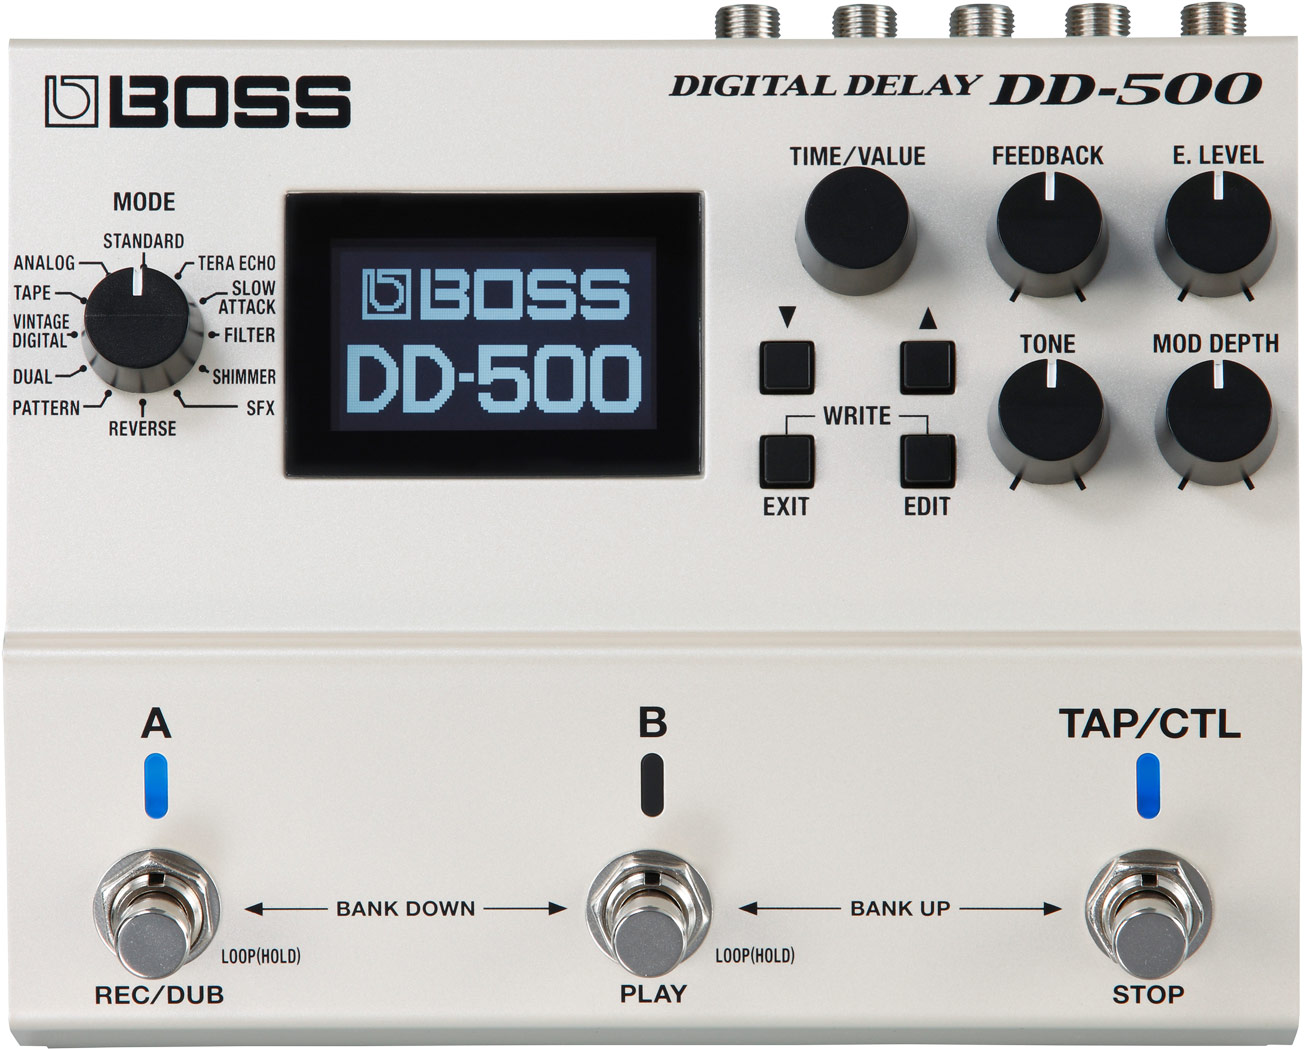 DD-500 Digital Delay Multi Effect Pedal